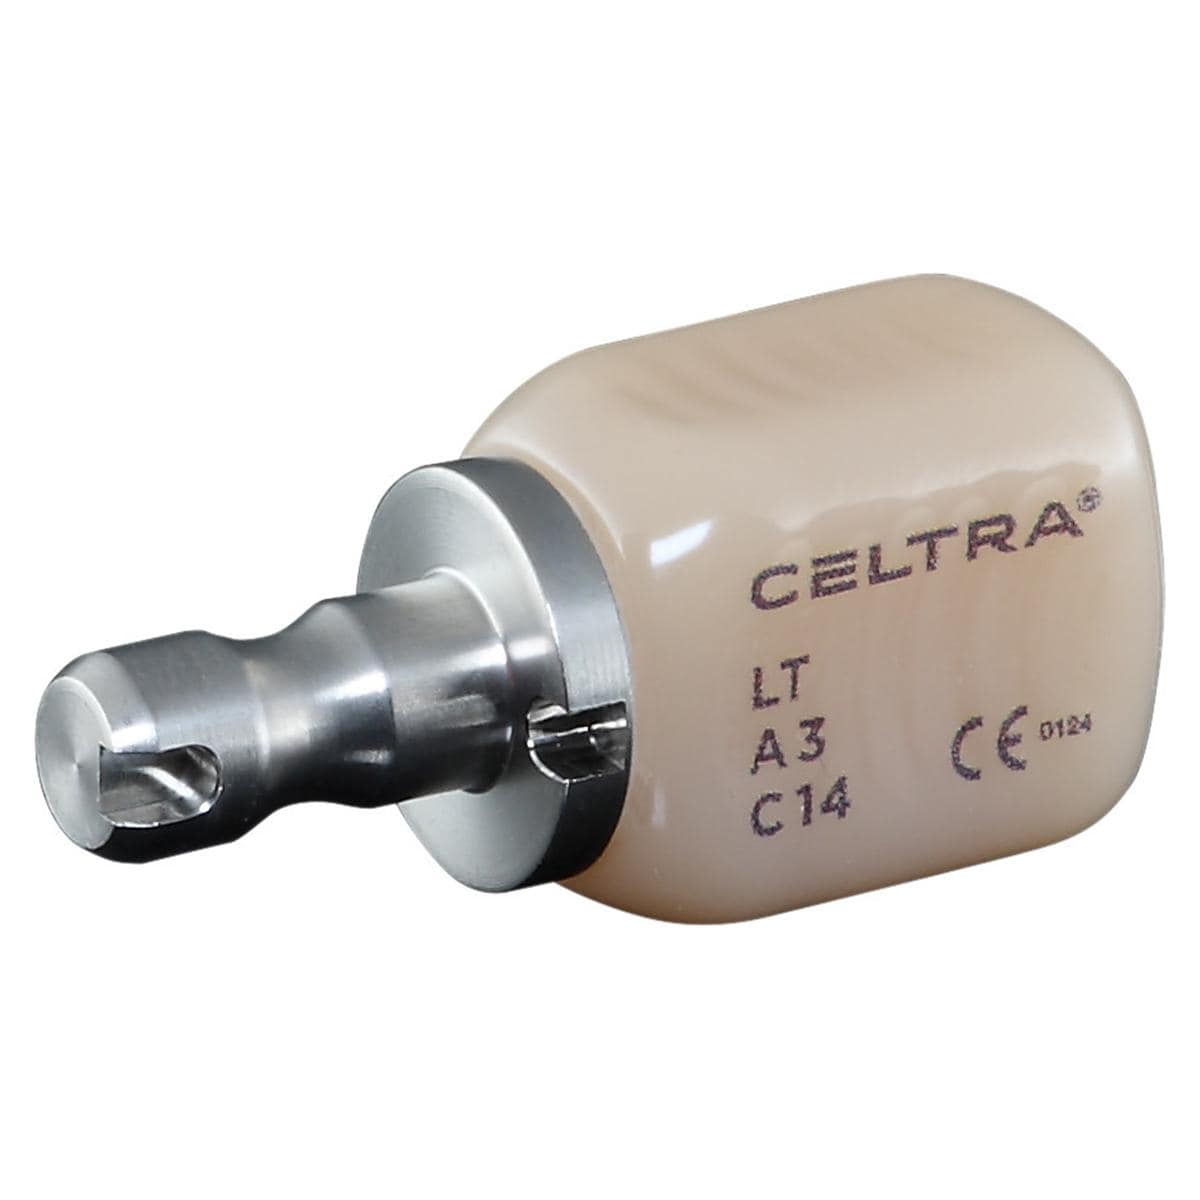 CELTRA DUO recharge - LT C14, A3 - 4 pcs